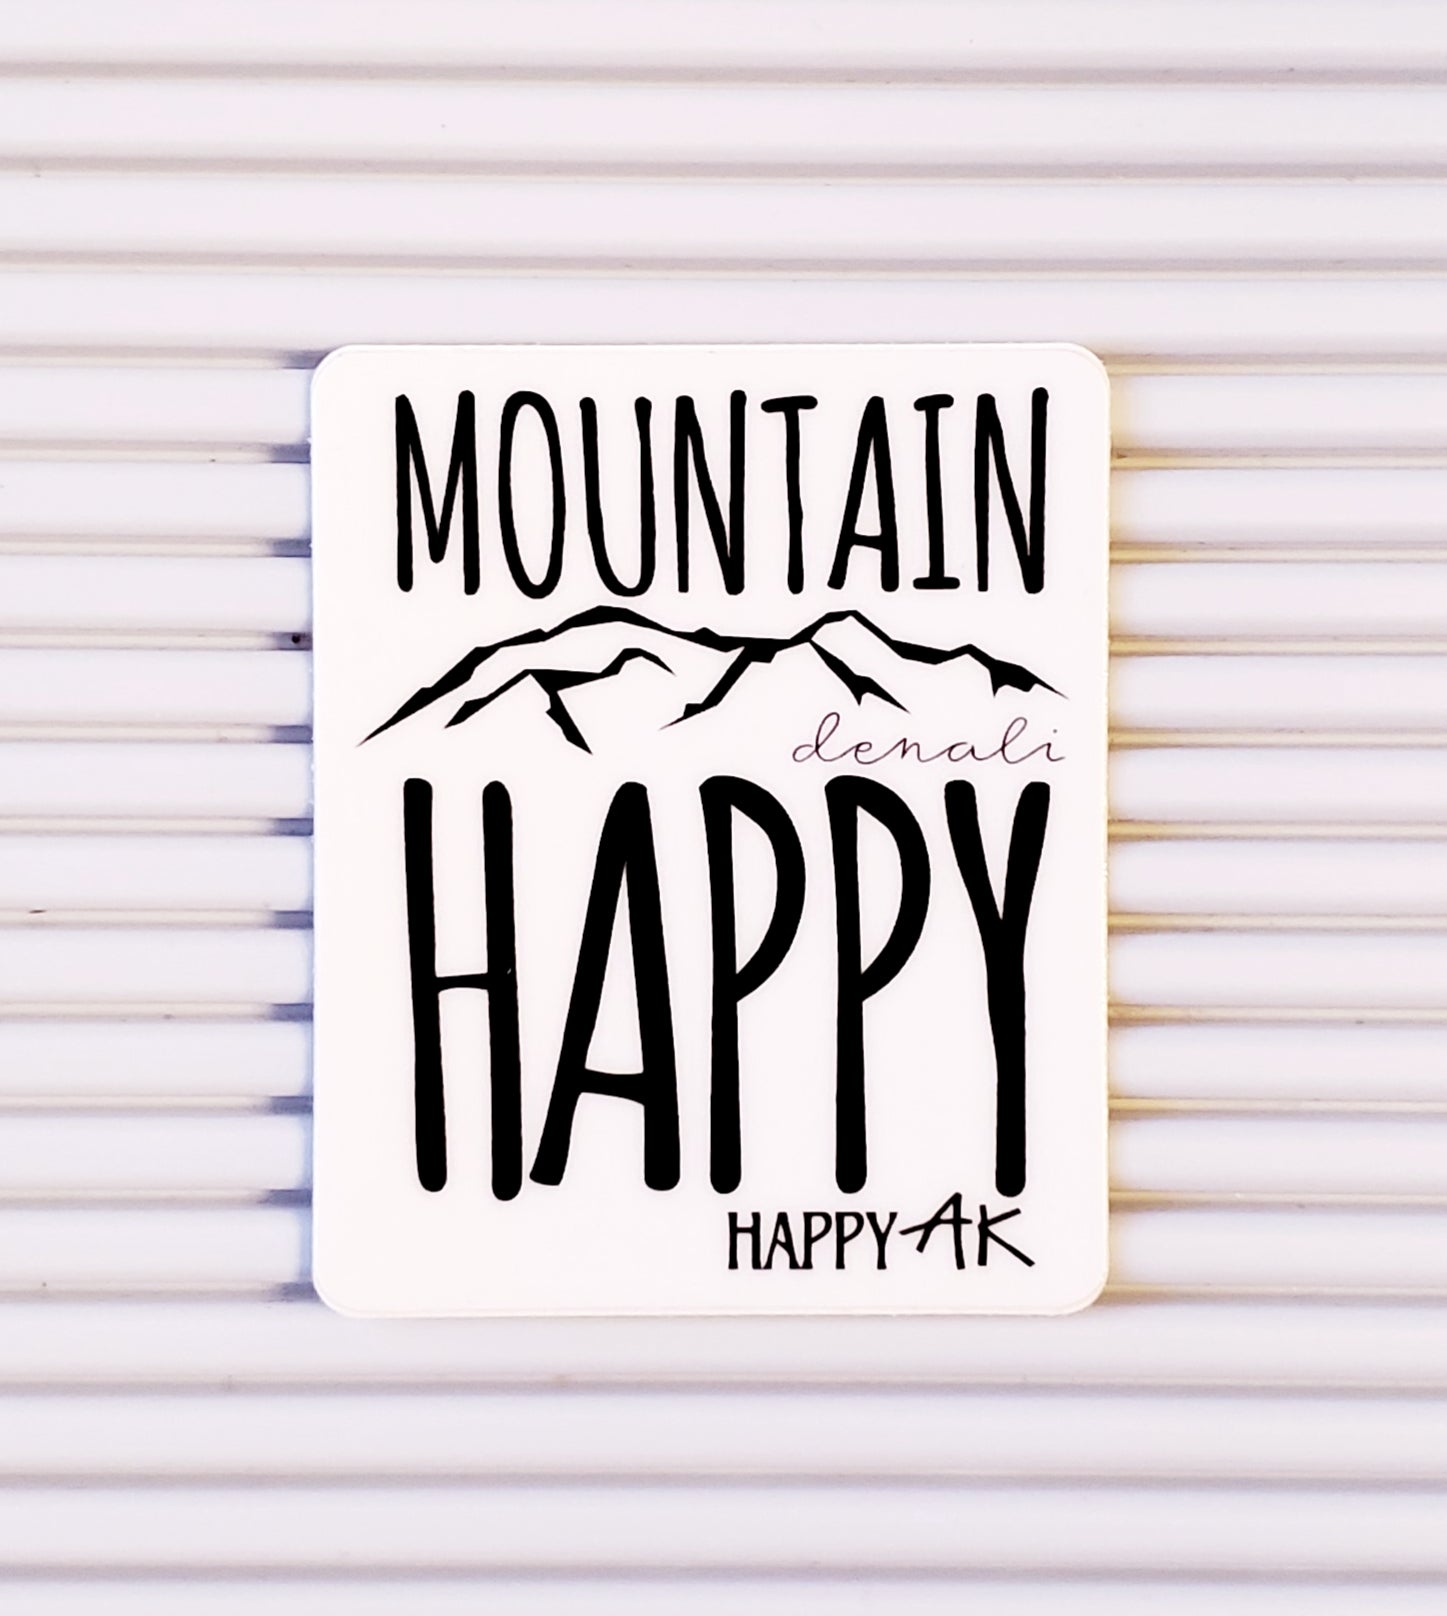 Denali "Mountain Happy" - Headband Happy AK